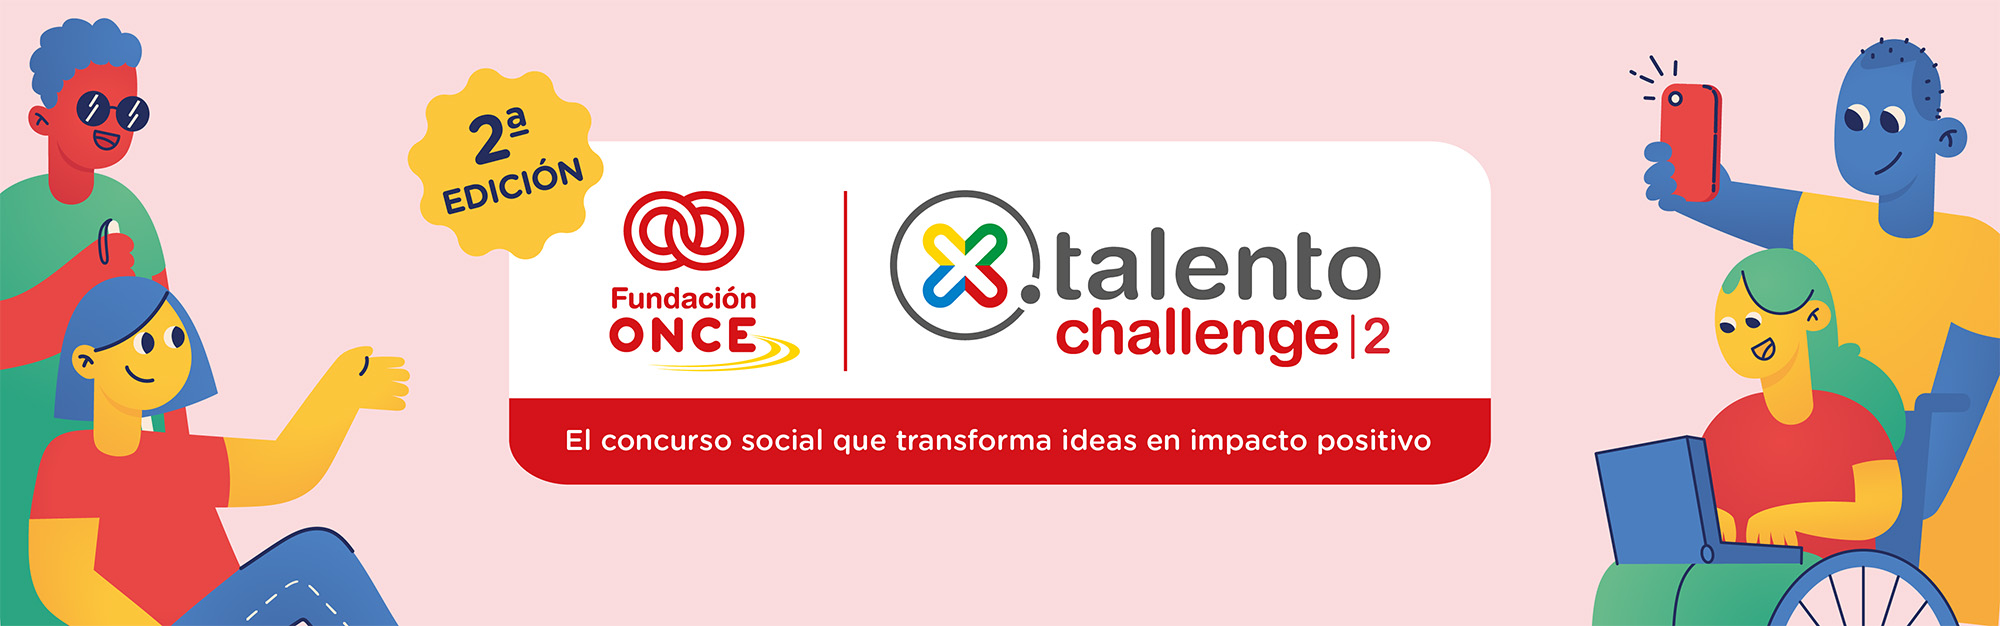 2ª Edición X Talento Challenge. El concurso social que transforma ideas en impacto positivo.